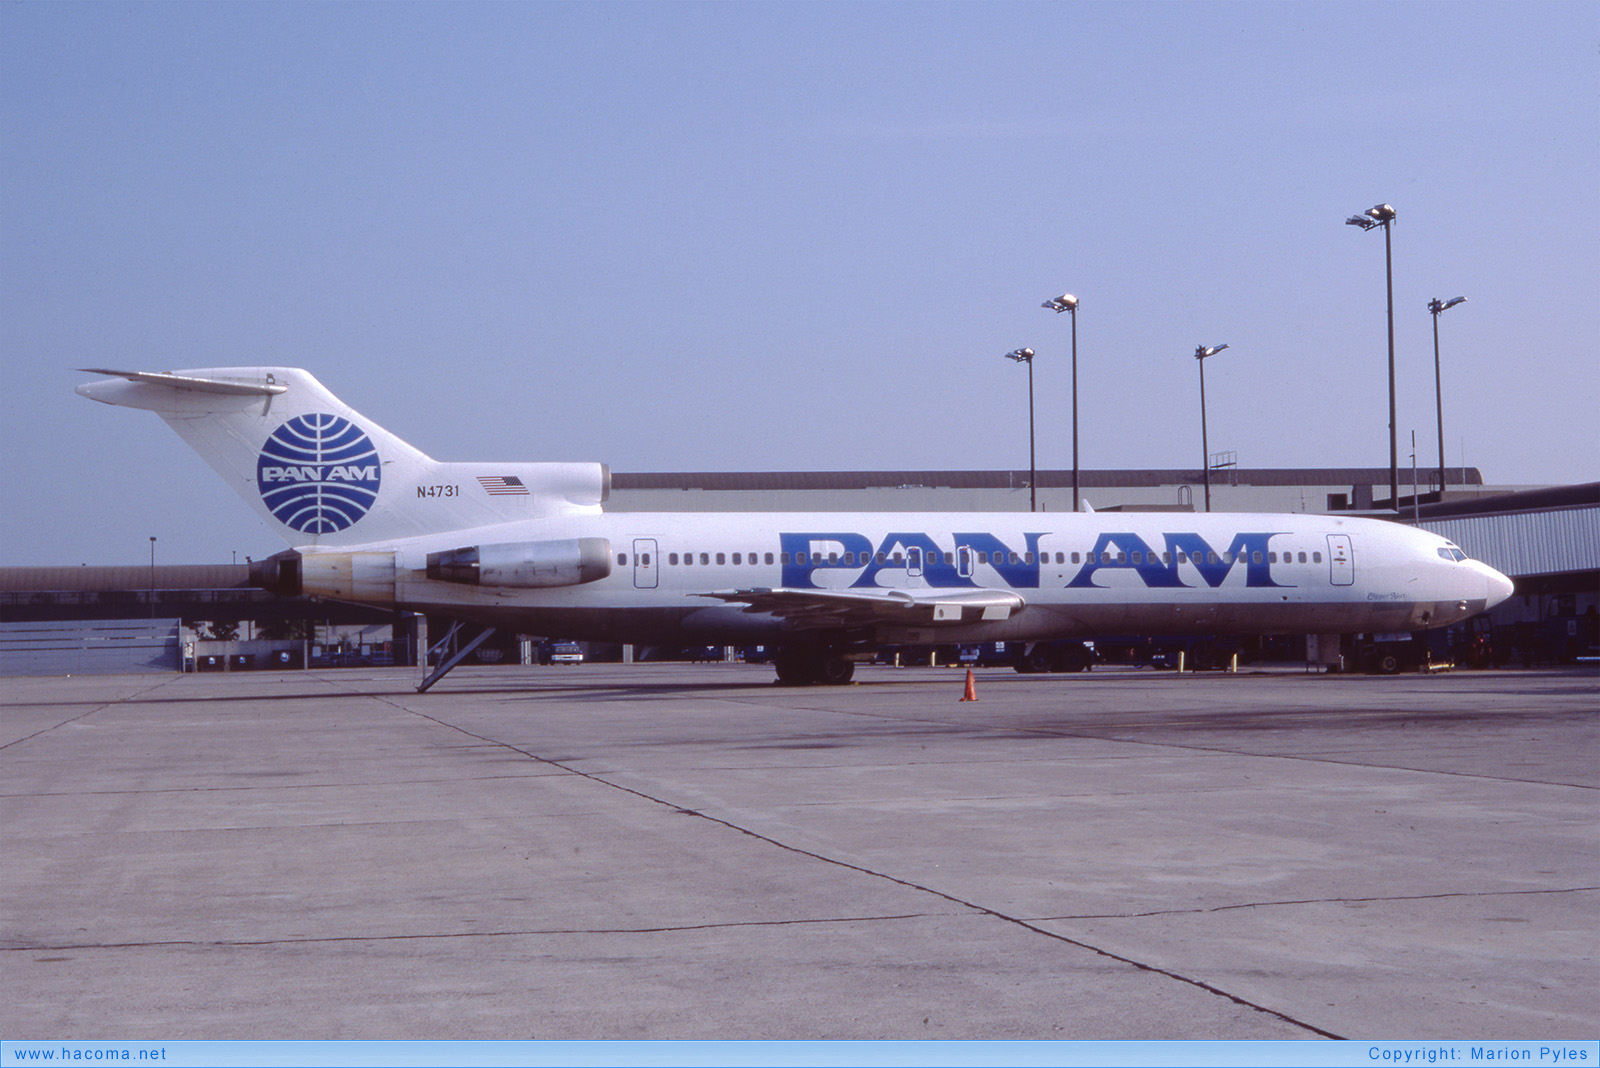 Photo of N4731 - Pan Am Clipper Alert - Cincinnati/Northern Kentucky International Airport - Sep 1985